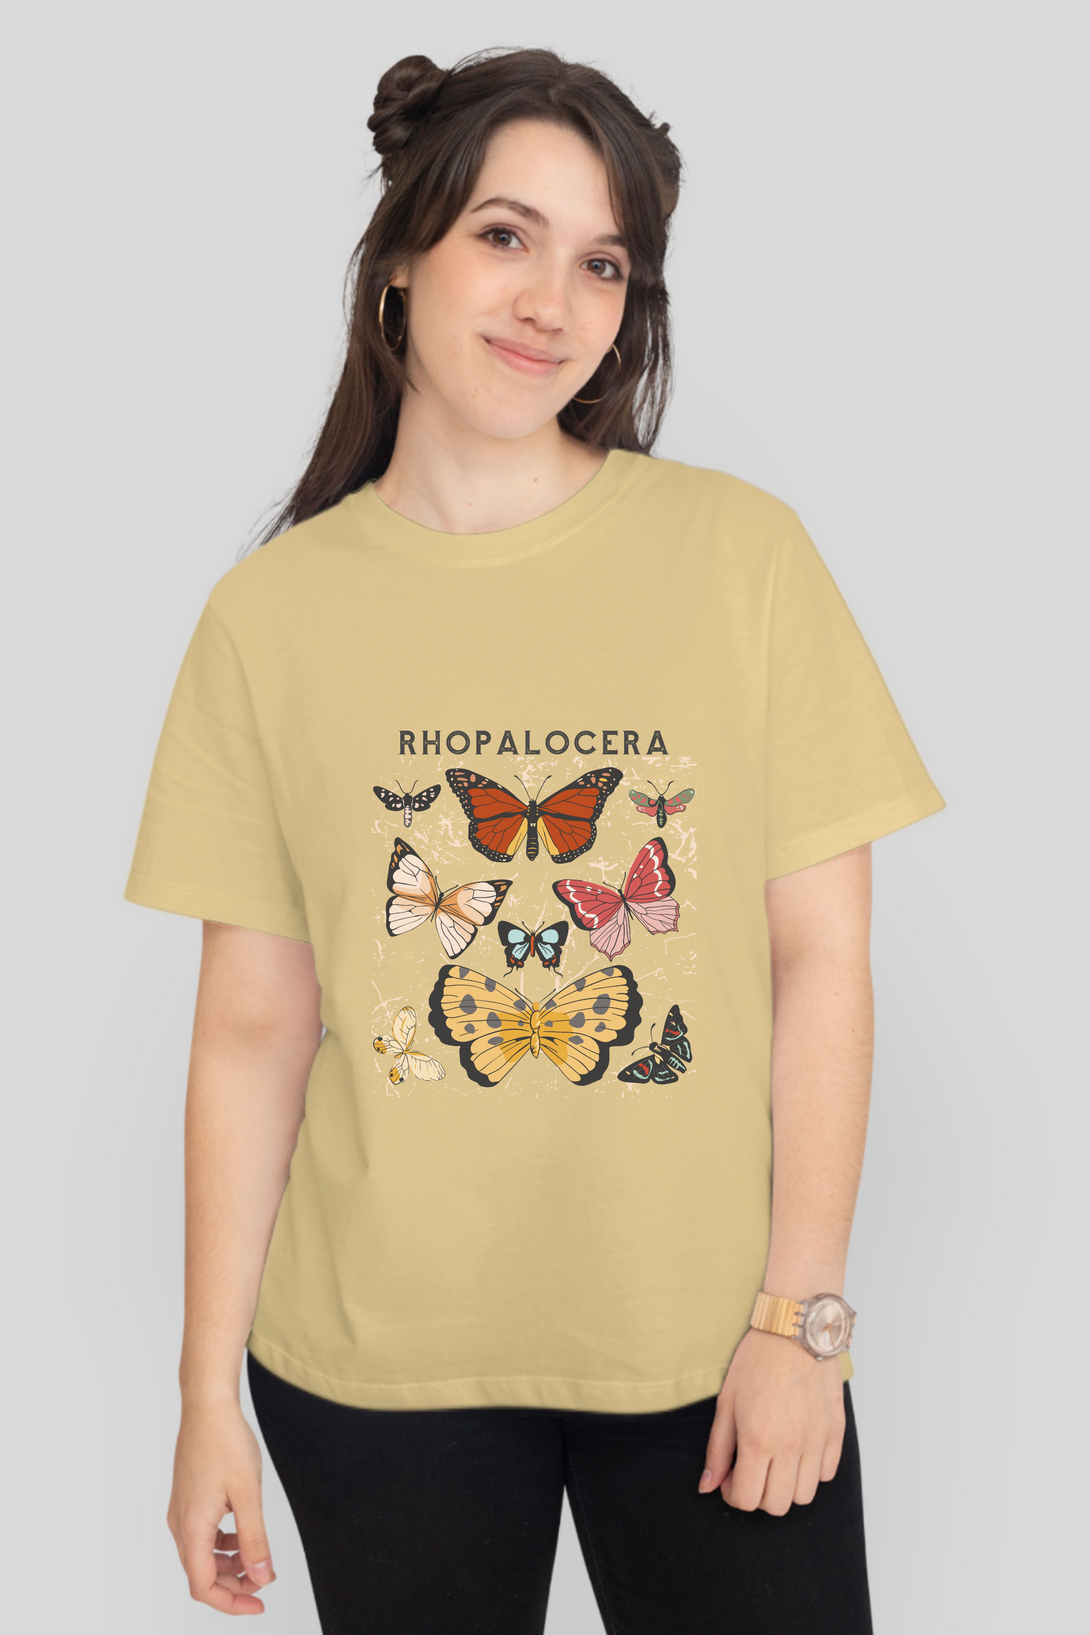 Rhopalocera Printed T-Shirt For Women - WowWaves - 10